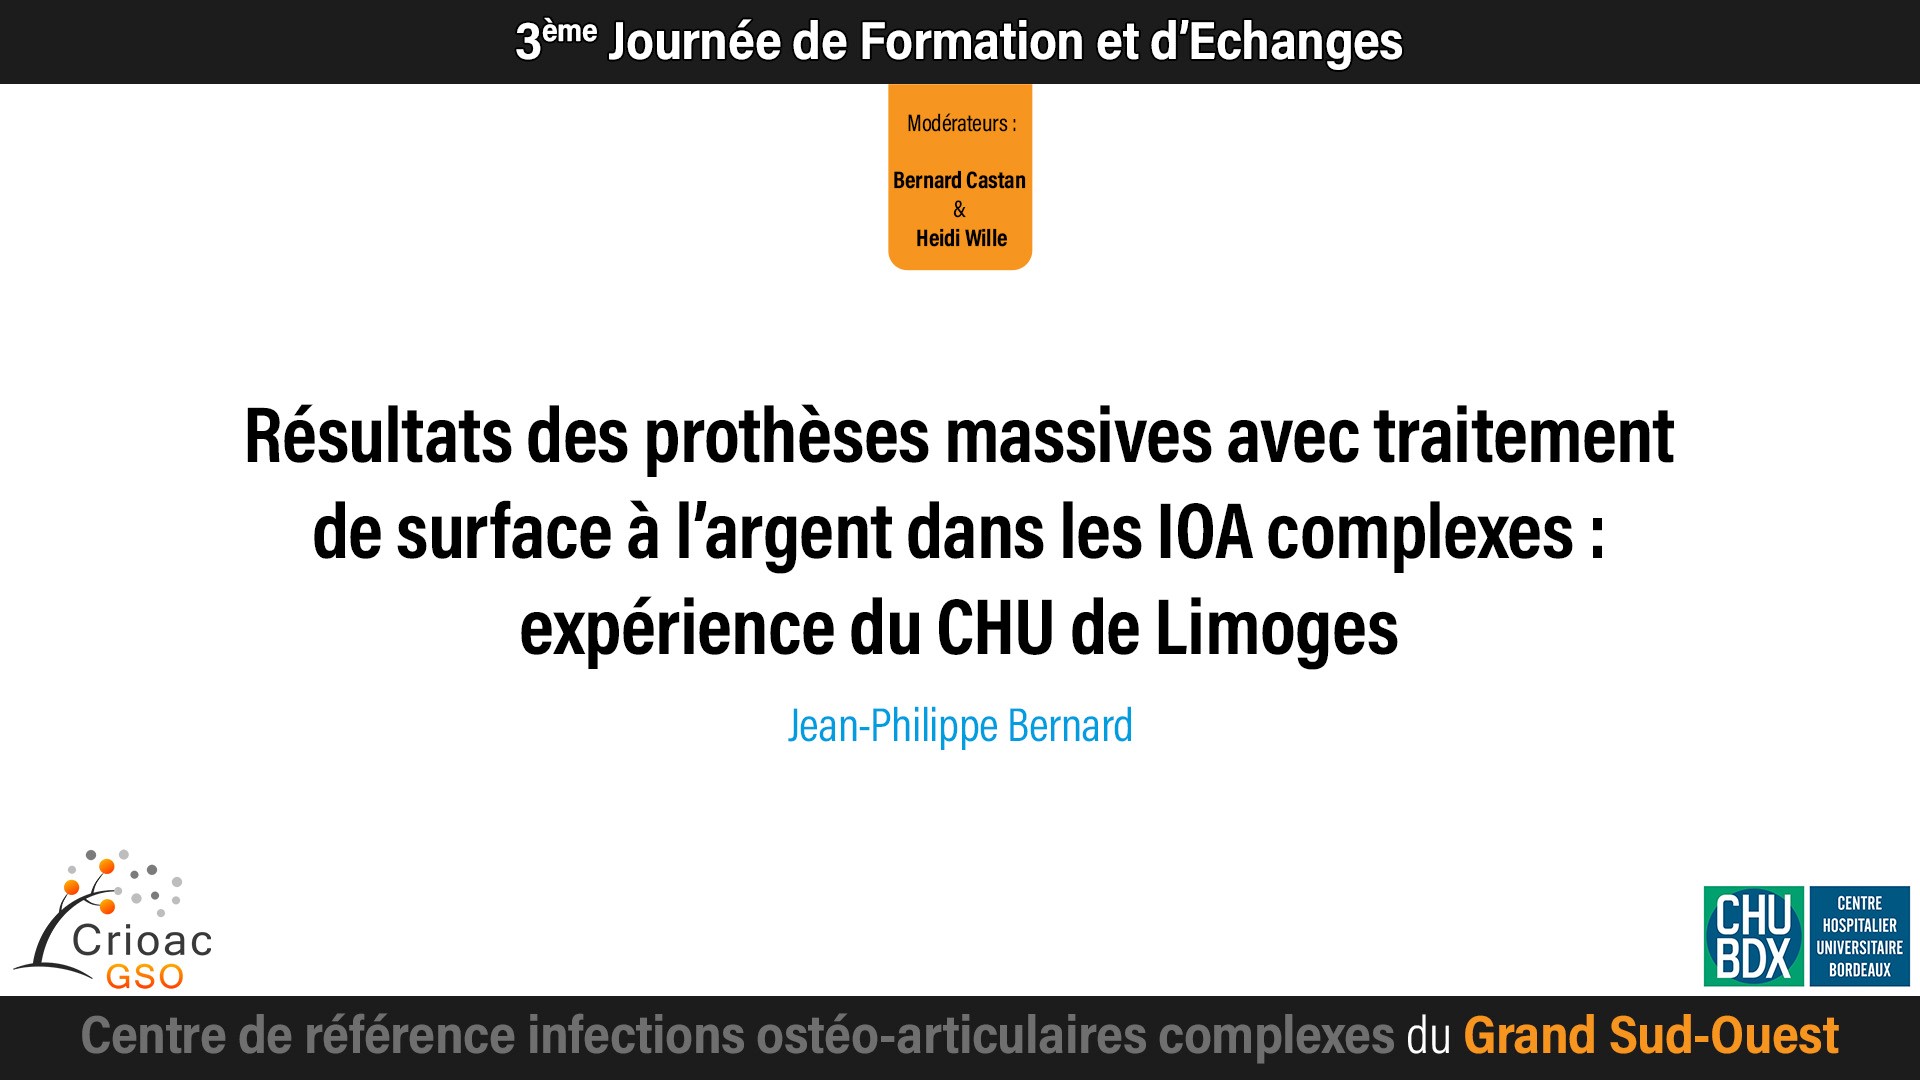 Résultats des prothèses massives avec traitement de surface à l’argent dans les IOA
complexes : expérience du CHU de Limoges